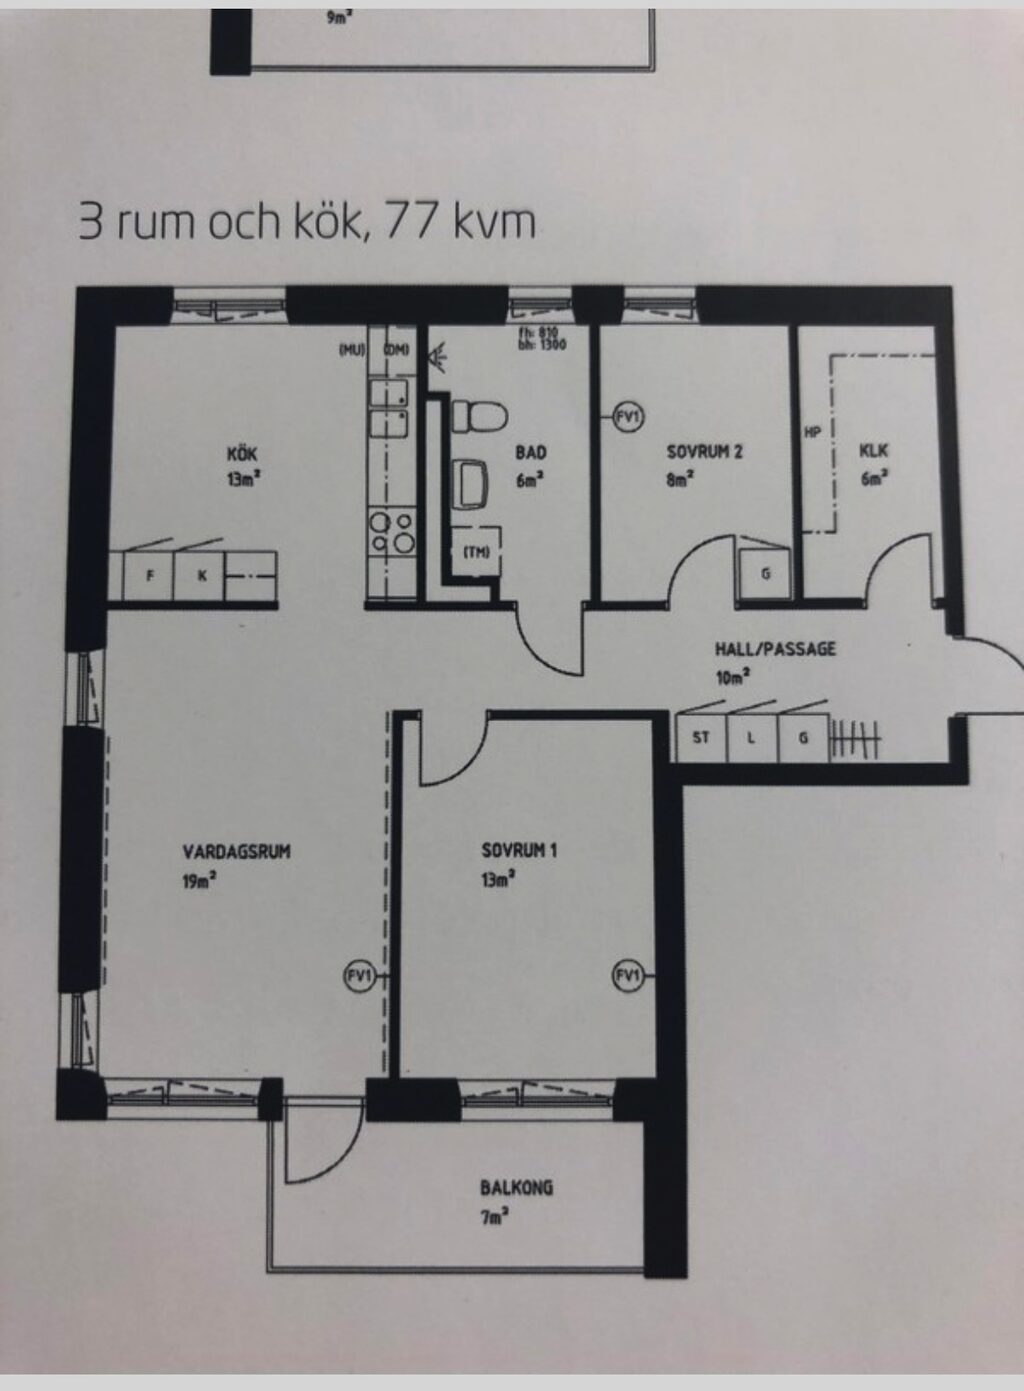 Lägenhetsbyte - Vaniljvägen 9, 123 55 Farsta